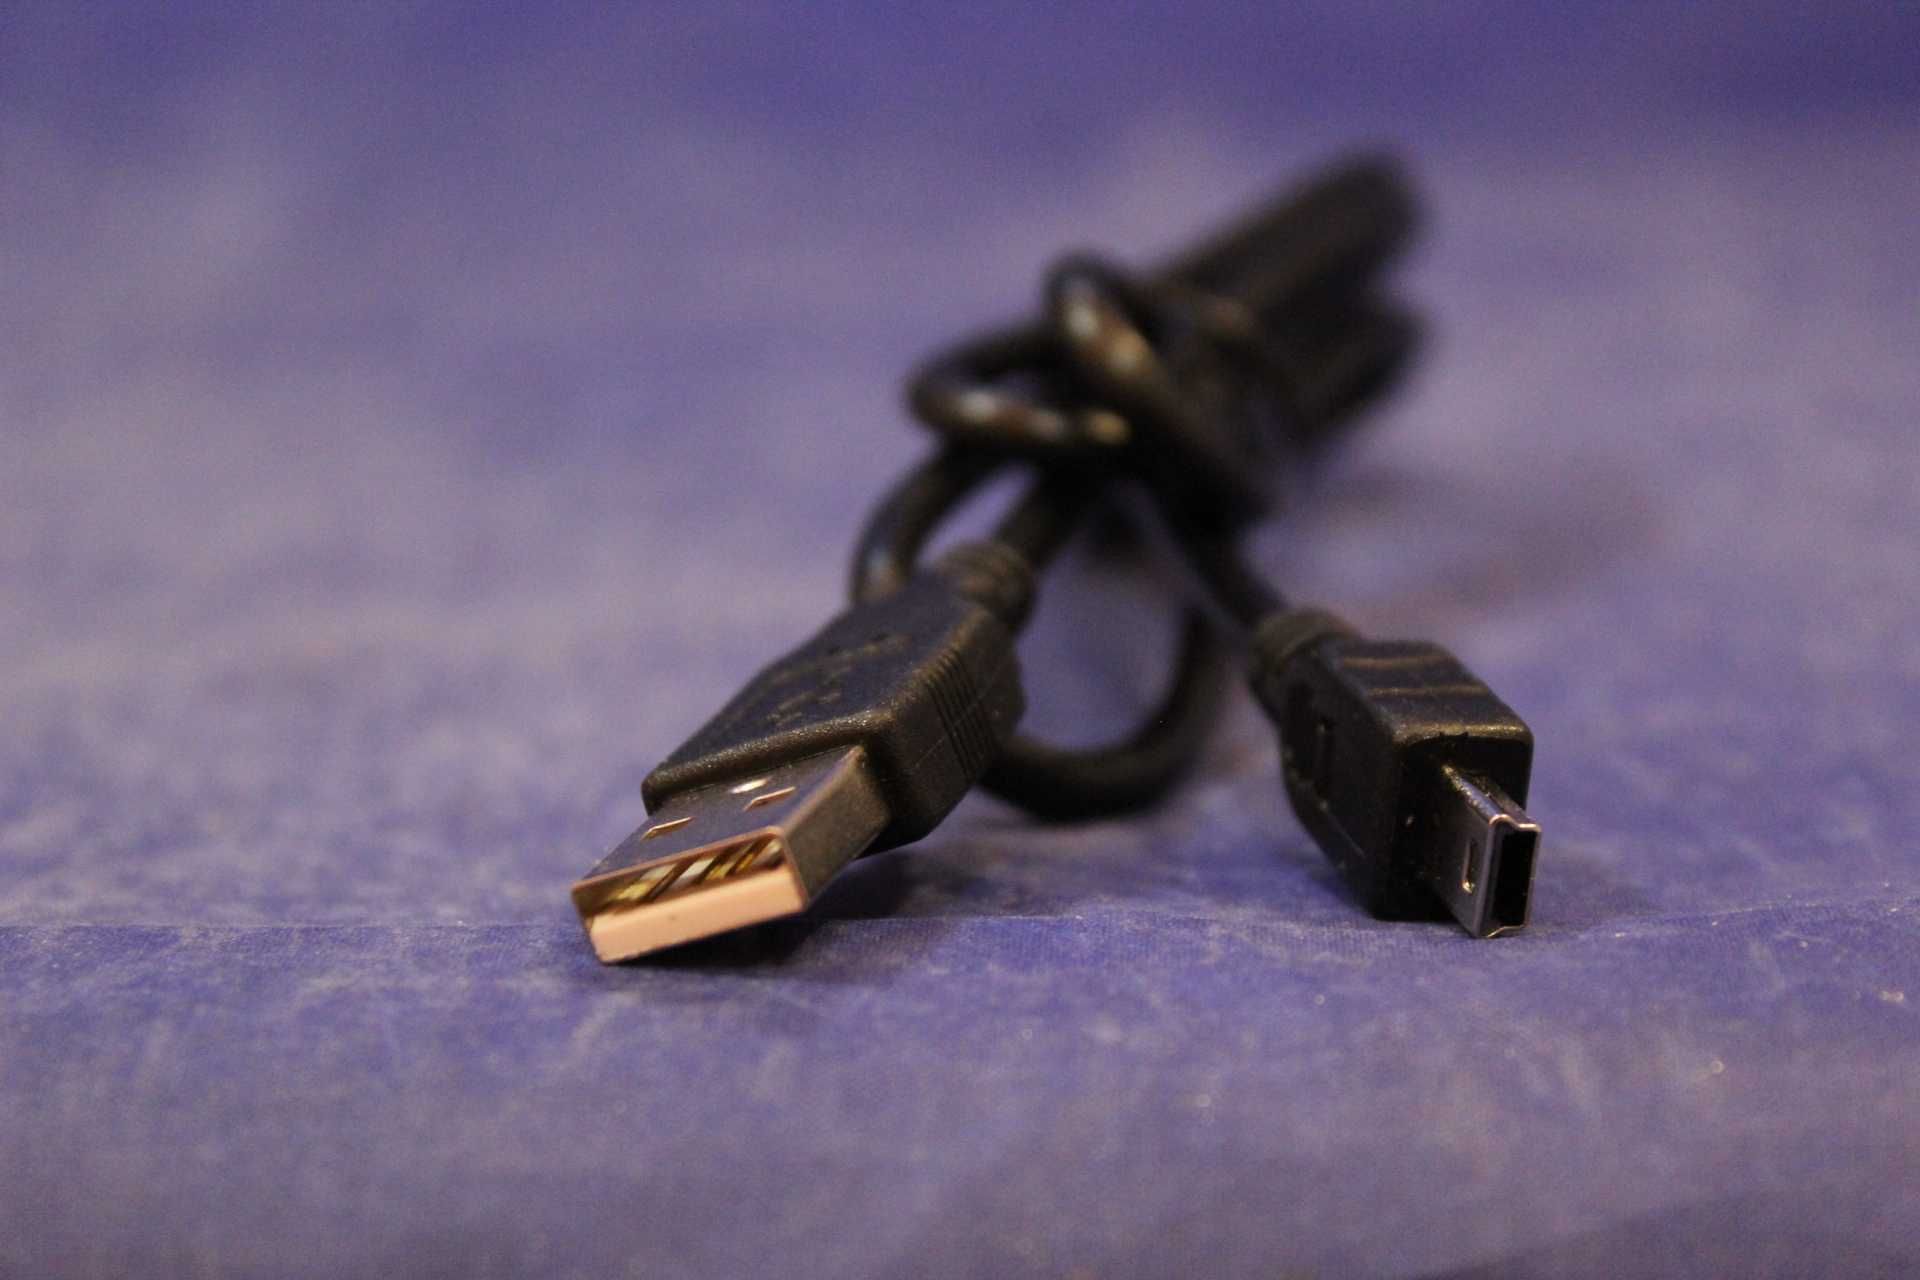 Mini usb - USB  1 метр Качественный кабель шнур соединитель переходник